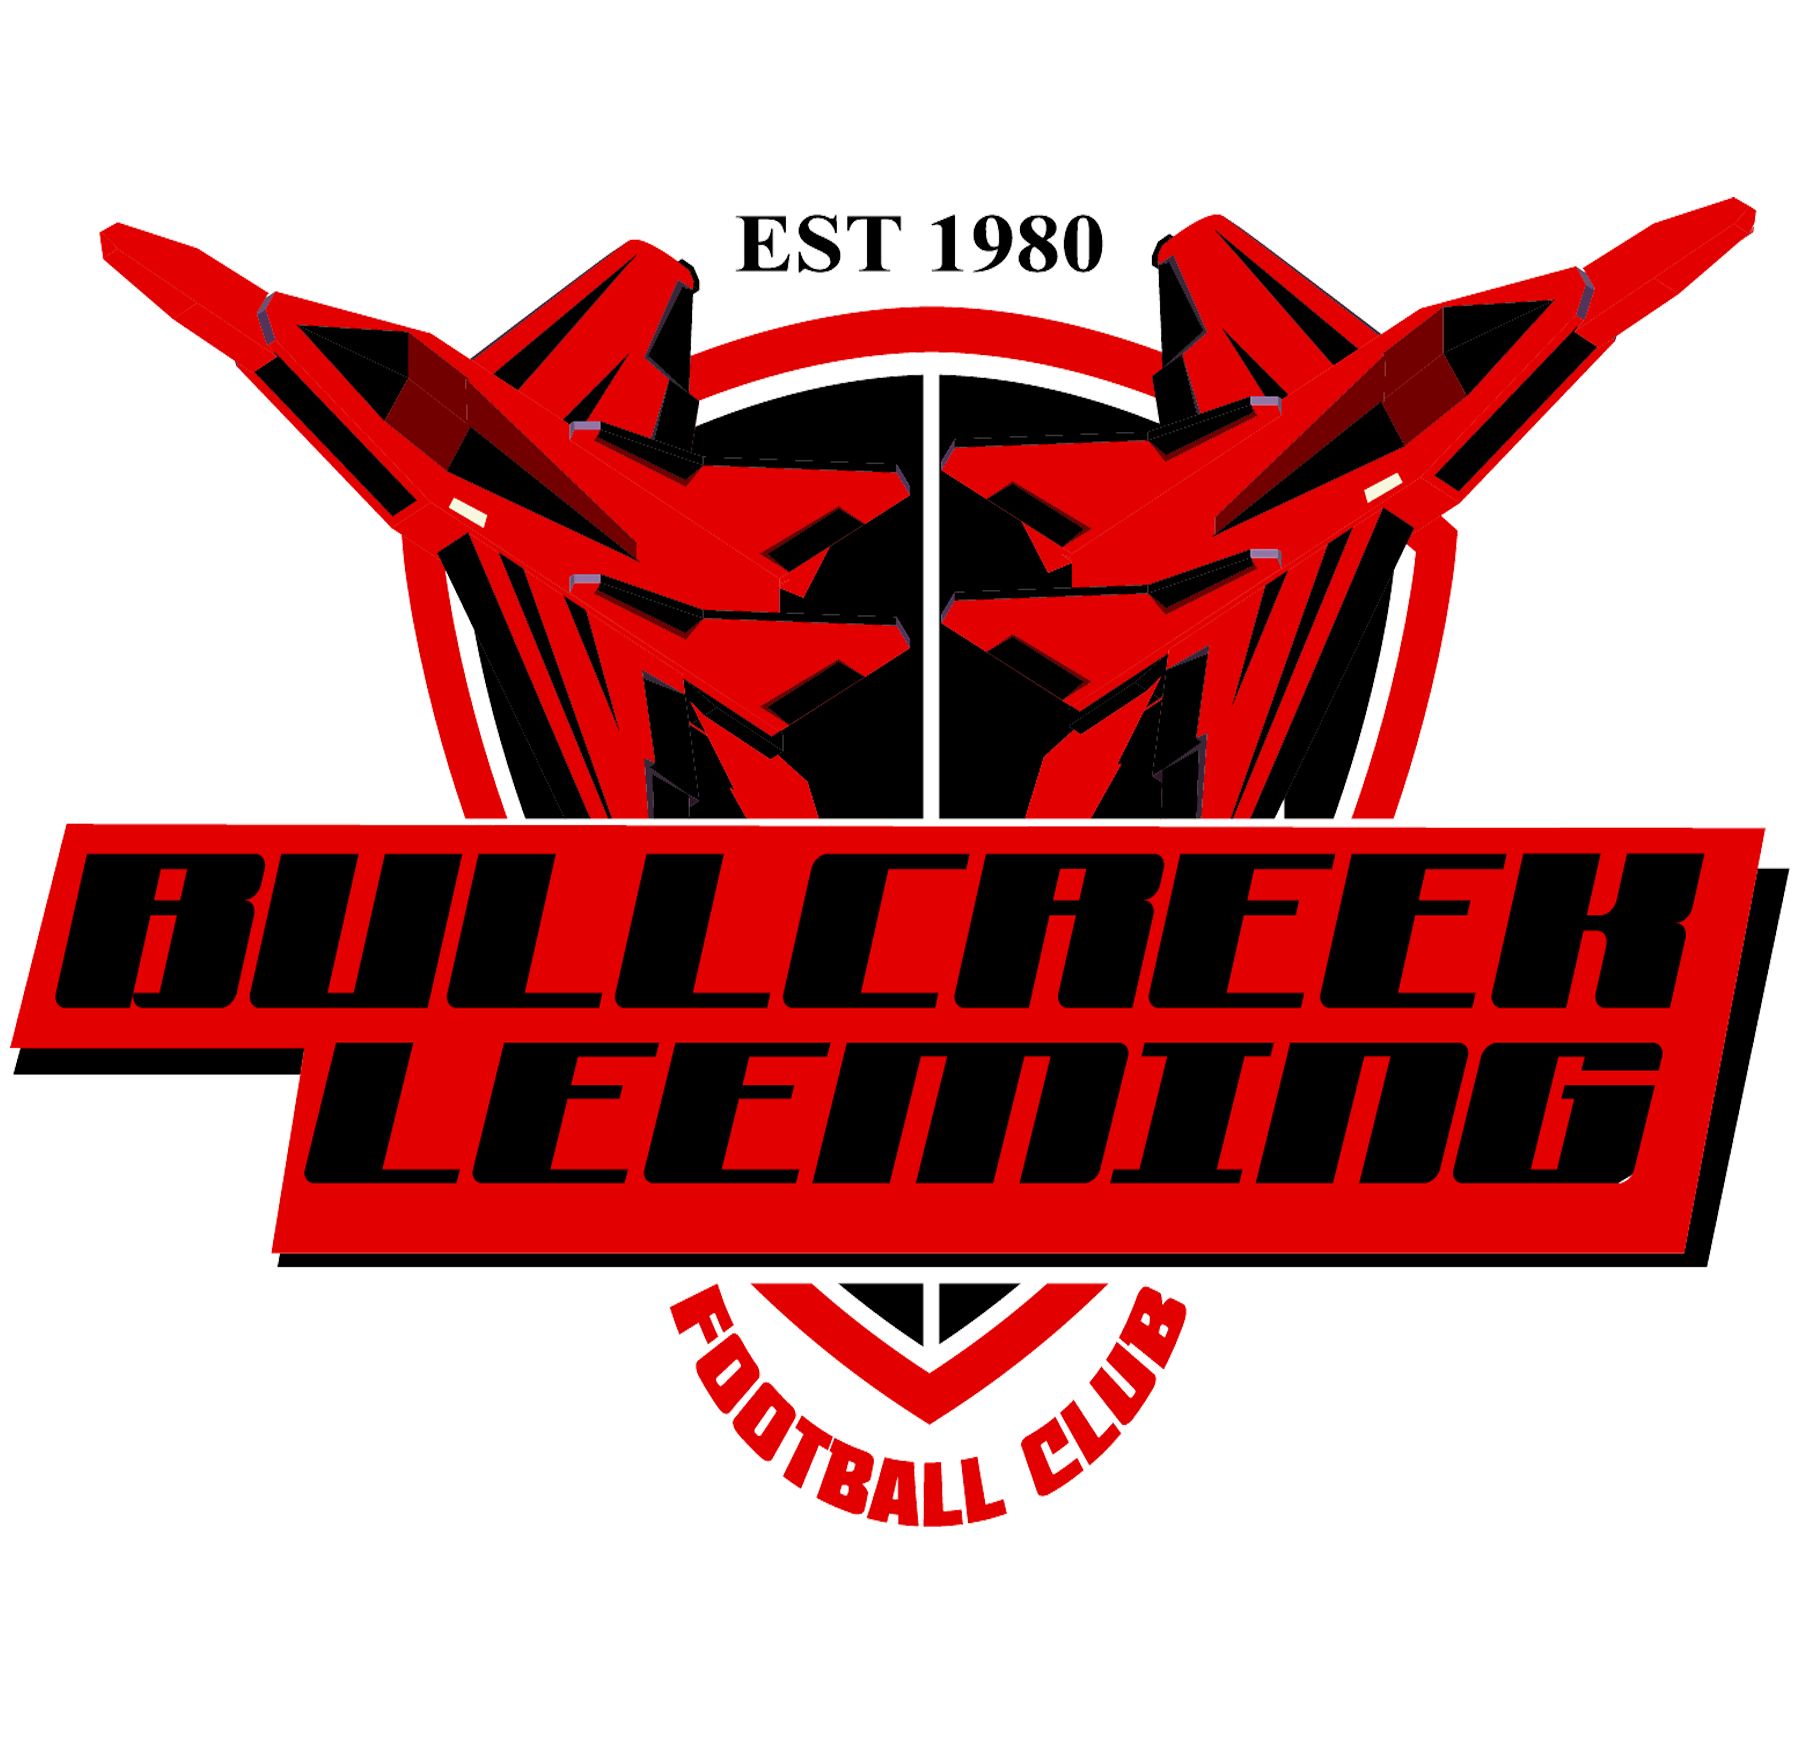 Bullcreek Leeming Football Club